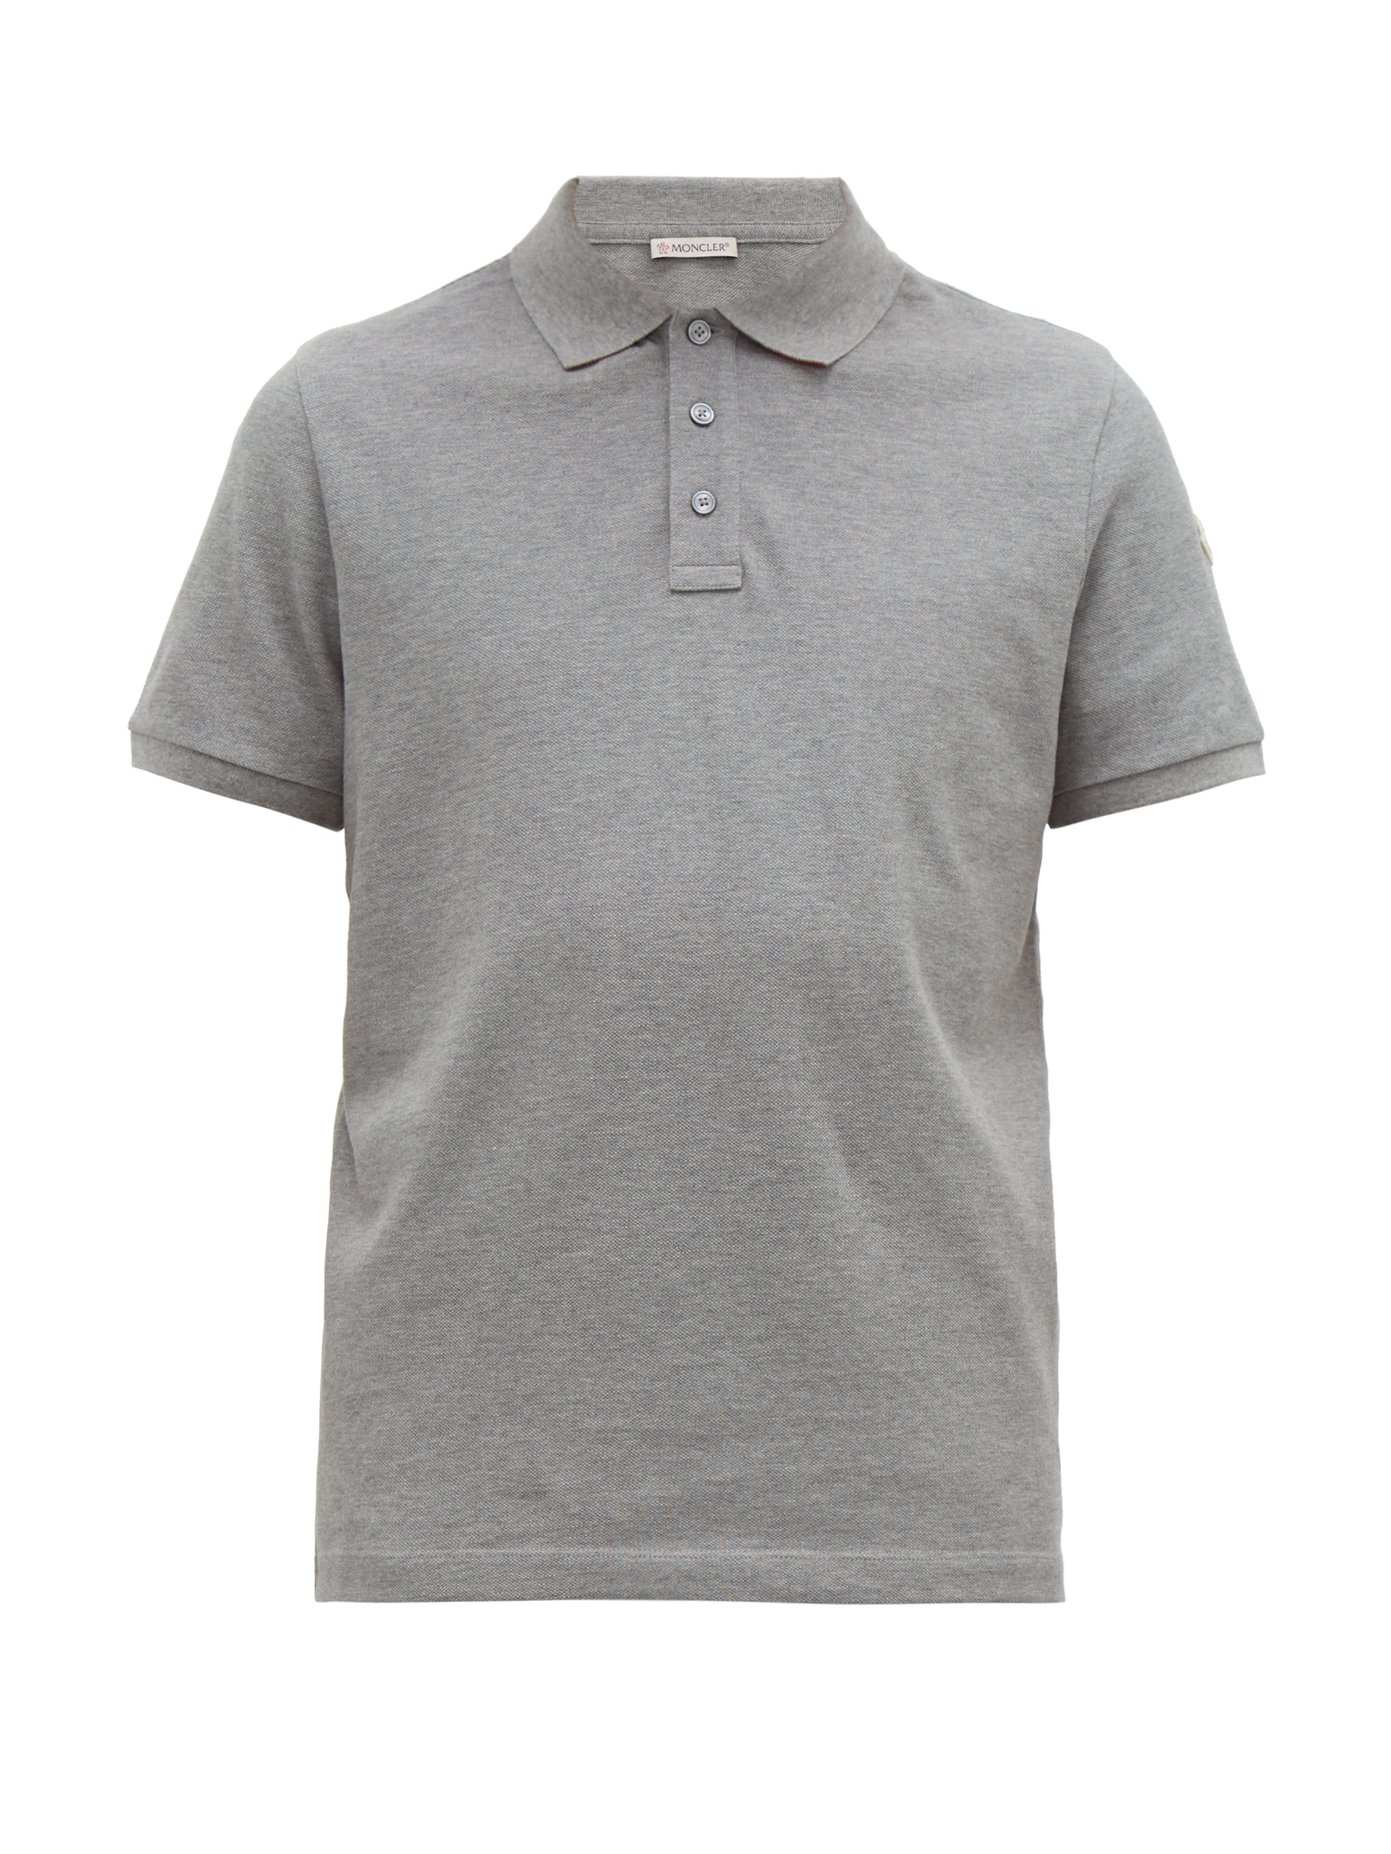 grey moncler polo shirt